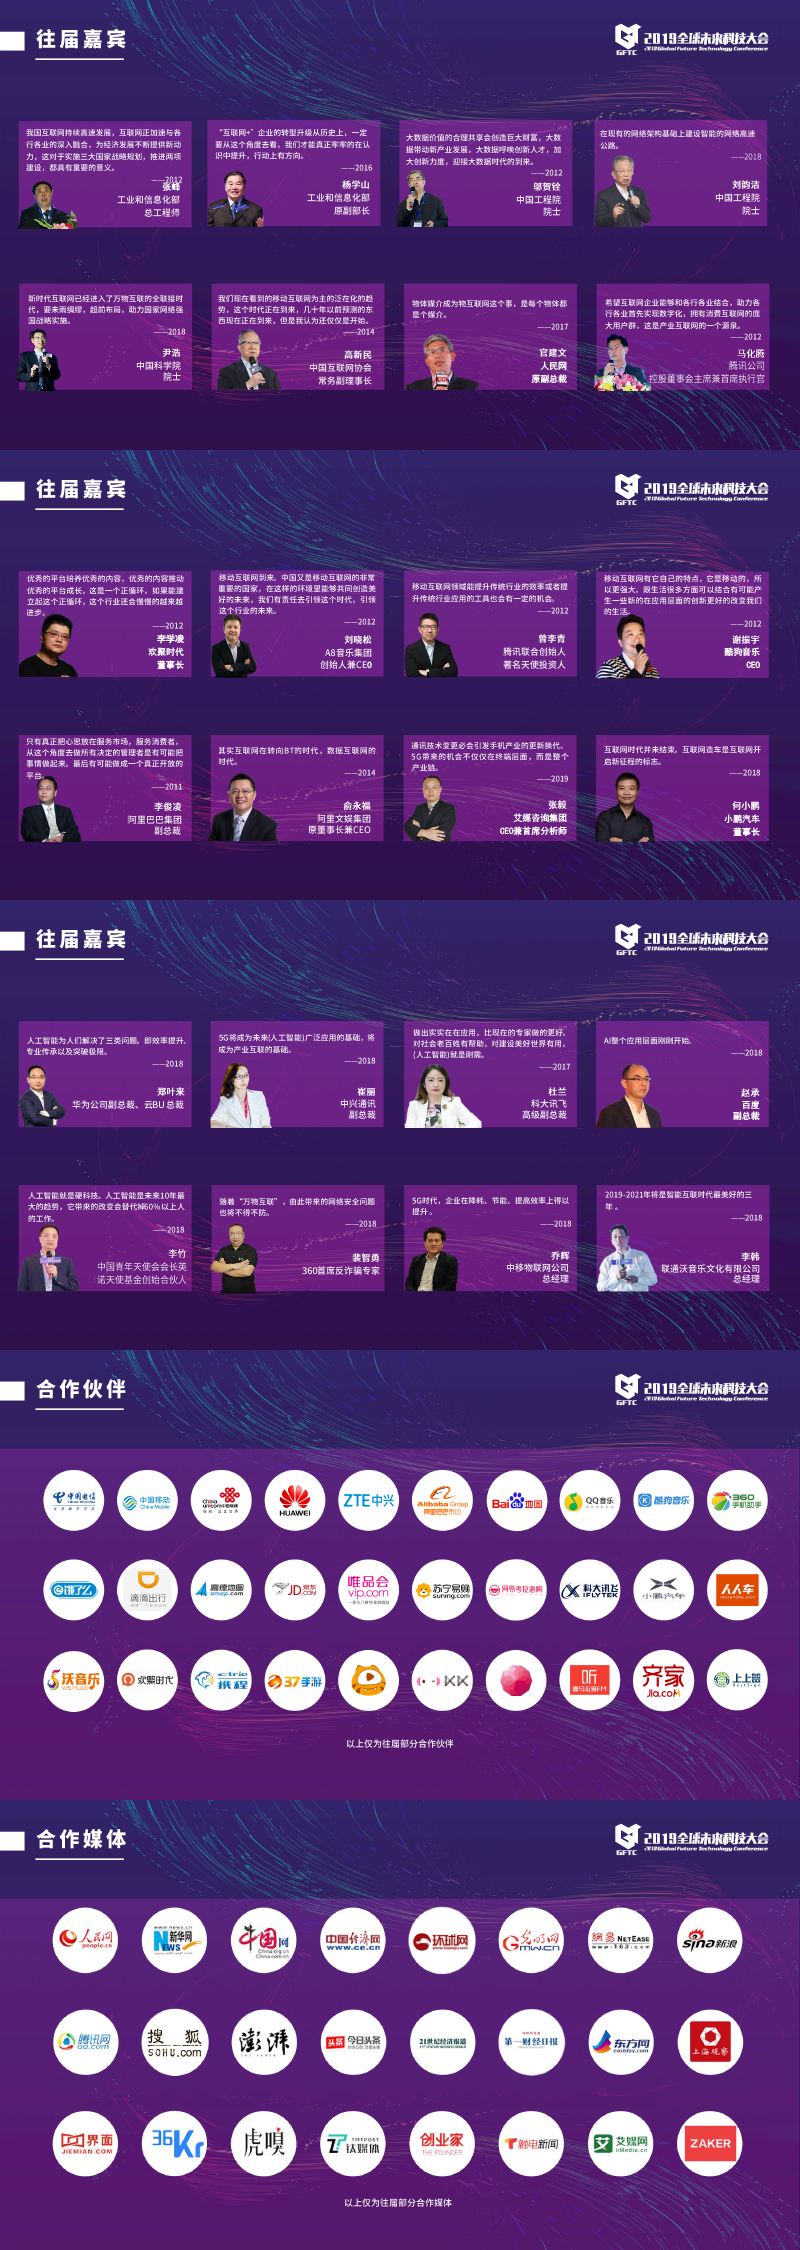 2019全球未来科技大会（上海站）